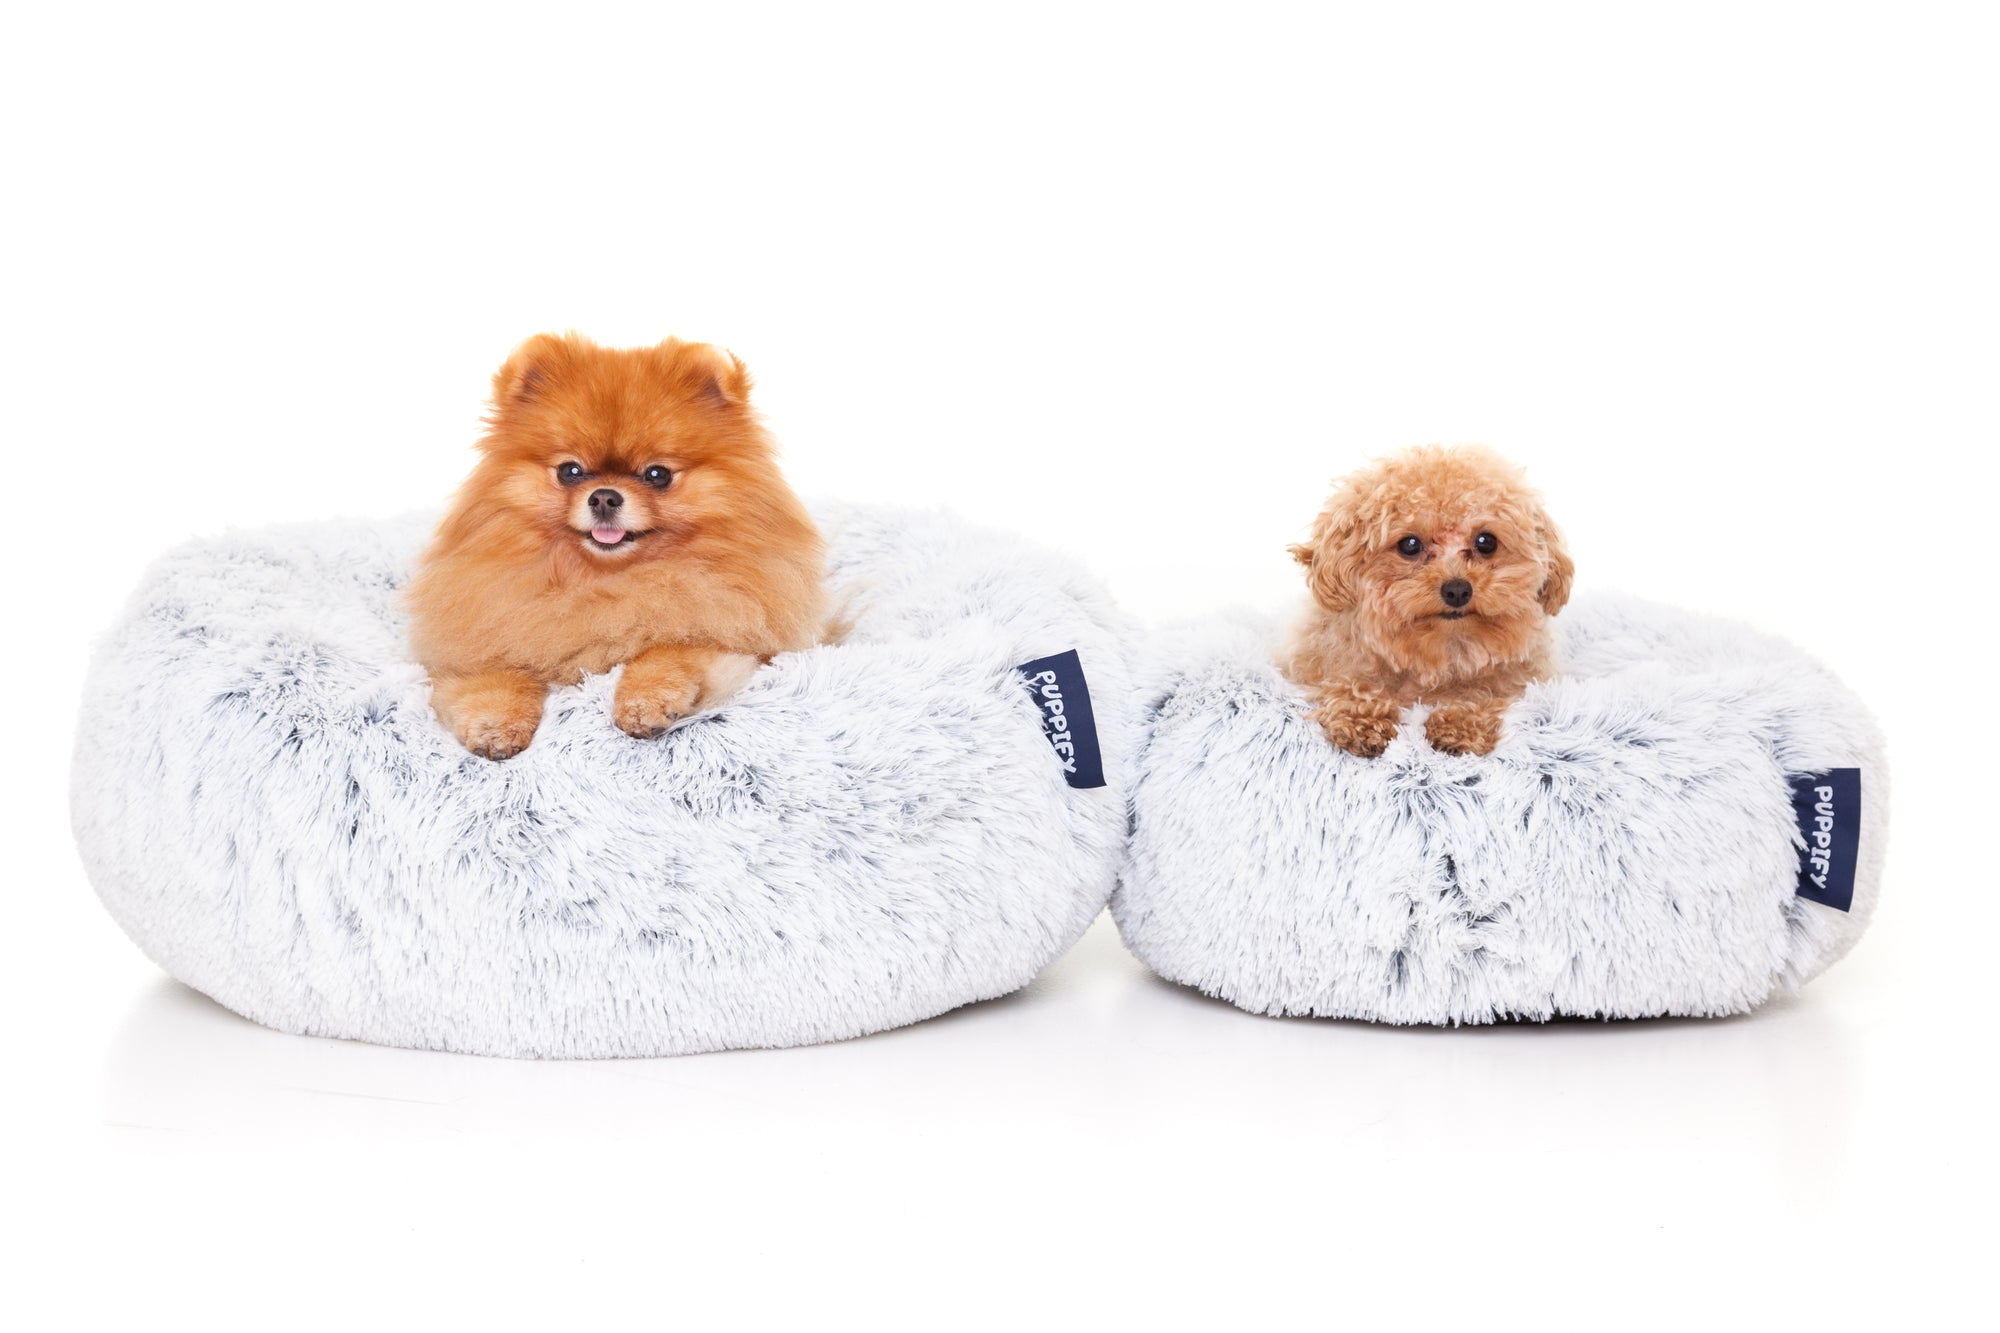 Donutvormige hondenmand van Puppify - een heerlijk zachte plek om te ontspannen